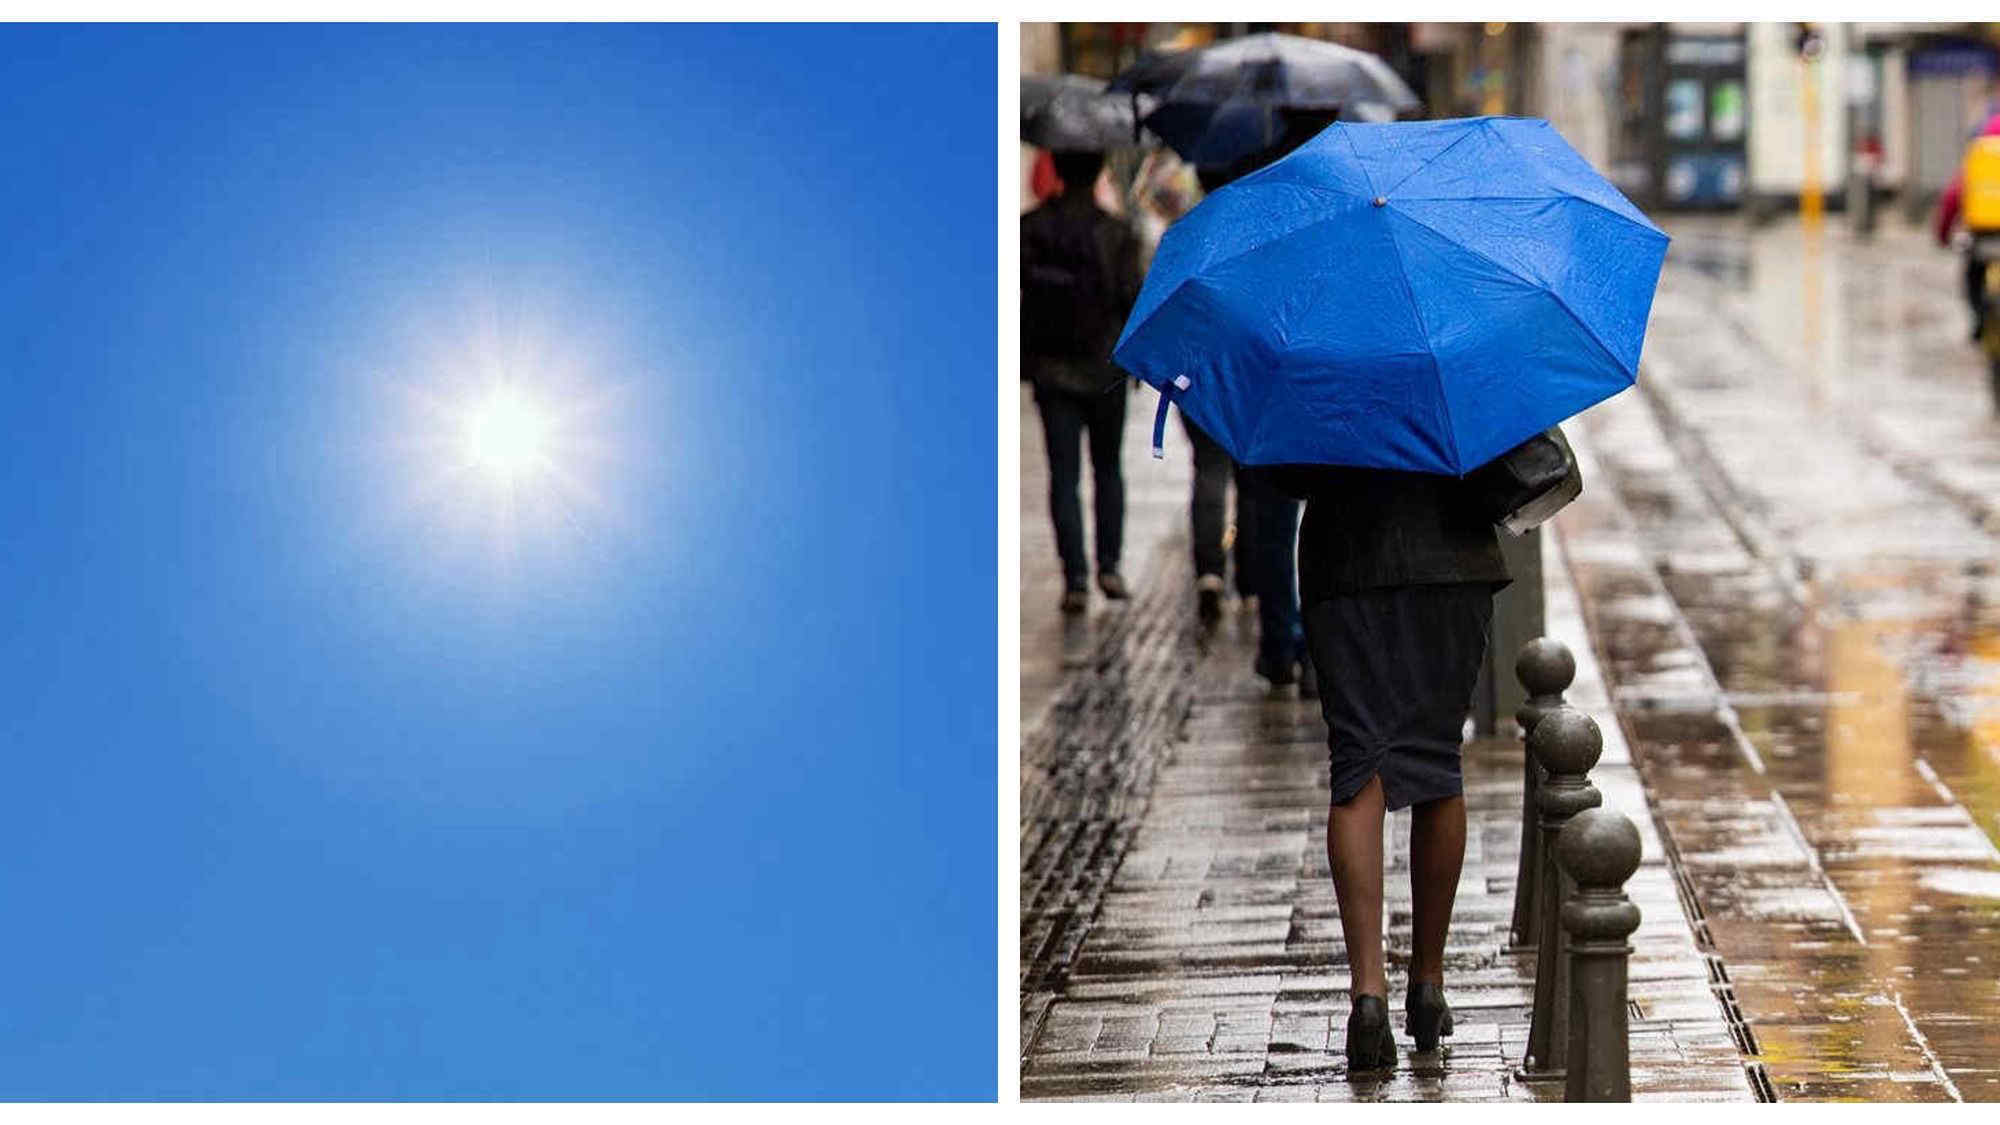 Meteo Italia, le previsioni: piogge e grandine al Nord, caldo anomalo al Sud